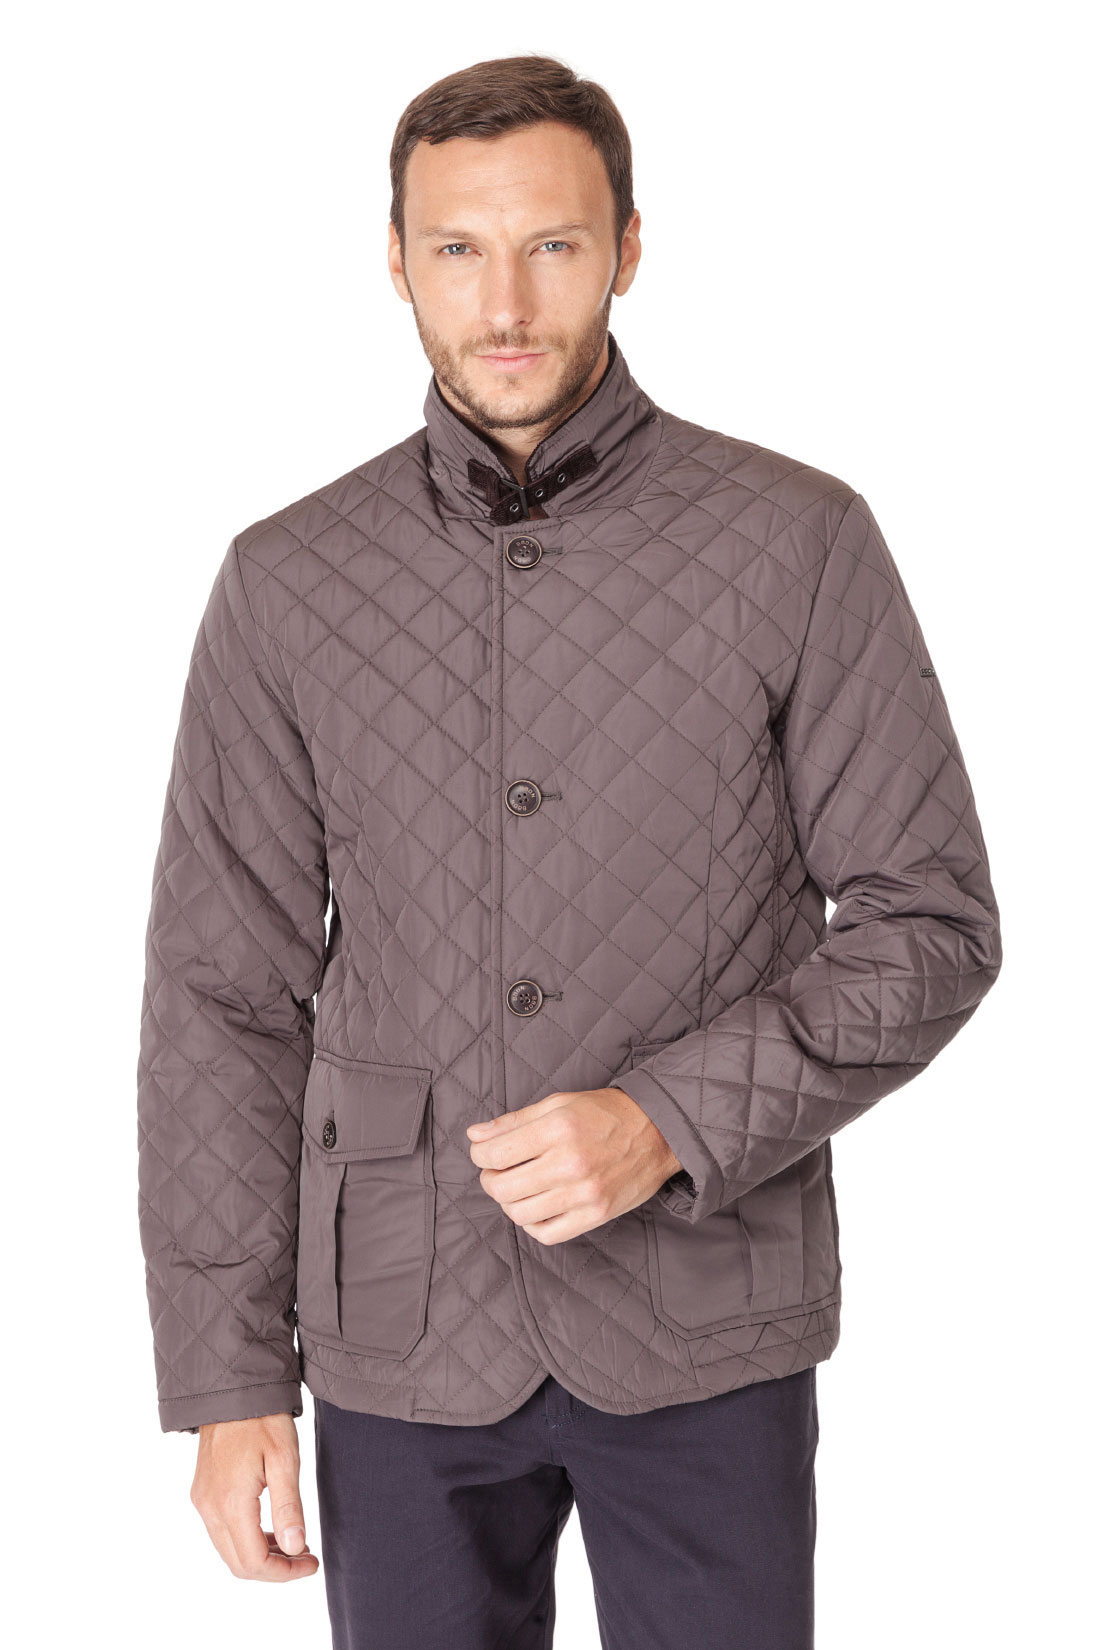 Классическая стёганая куртка (арт. baon B537023), размер L, цвет серый Классическая стёганая куртка (арт. baon B537023) - фото 1